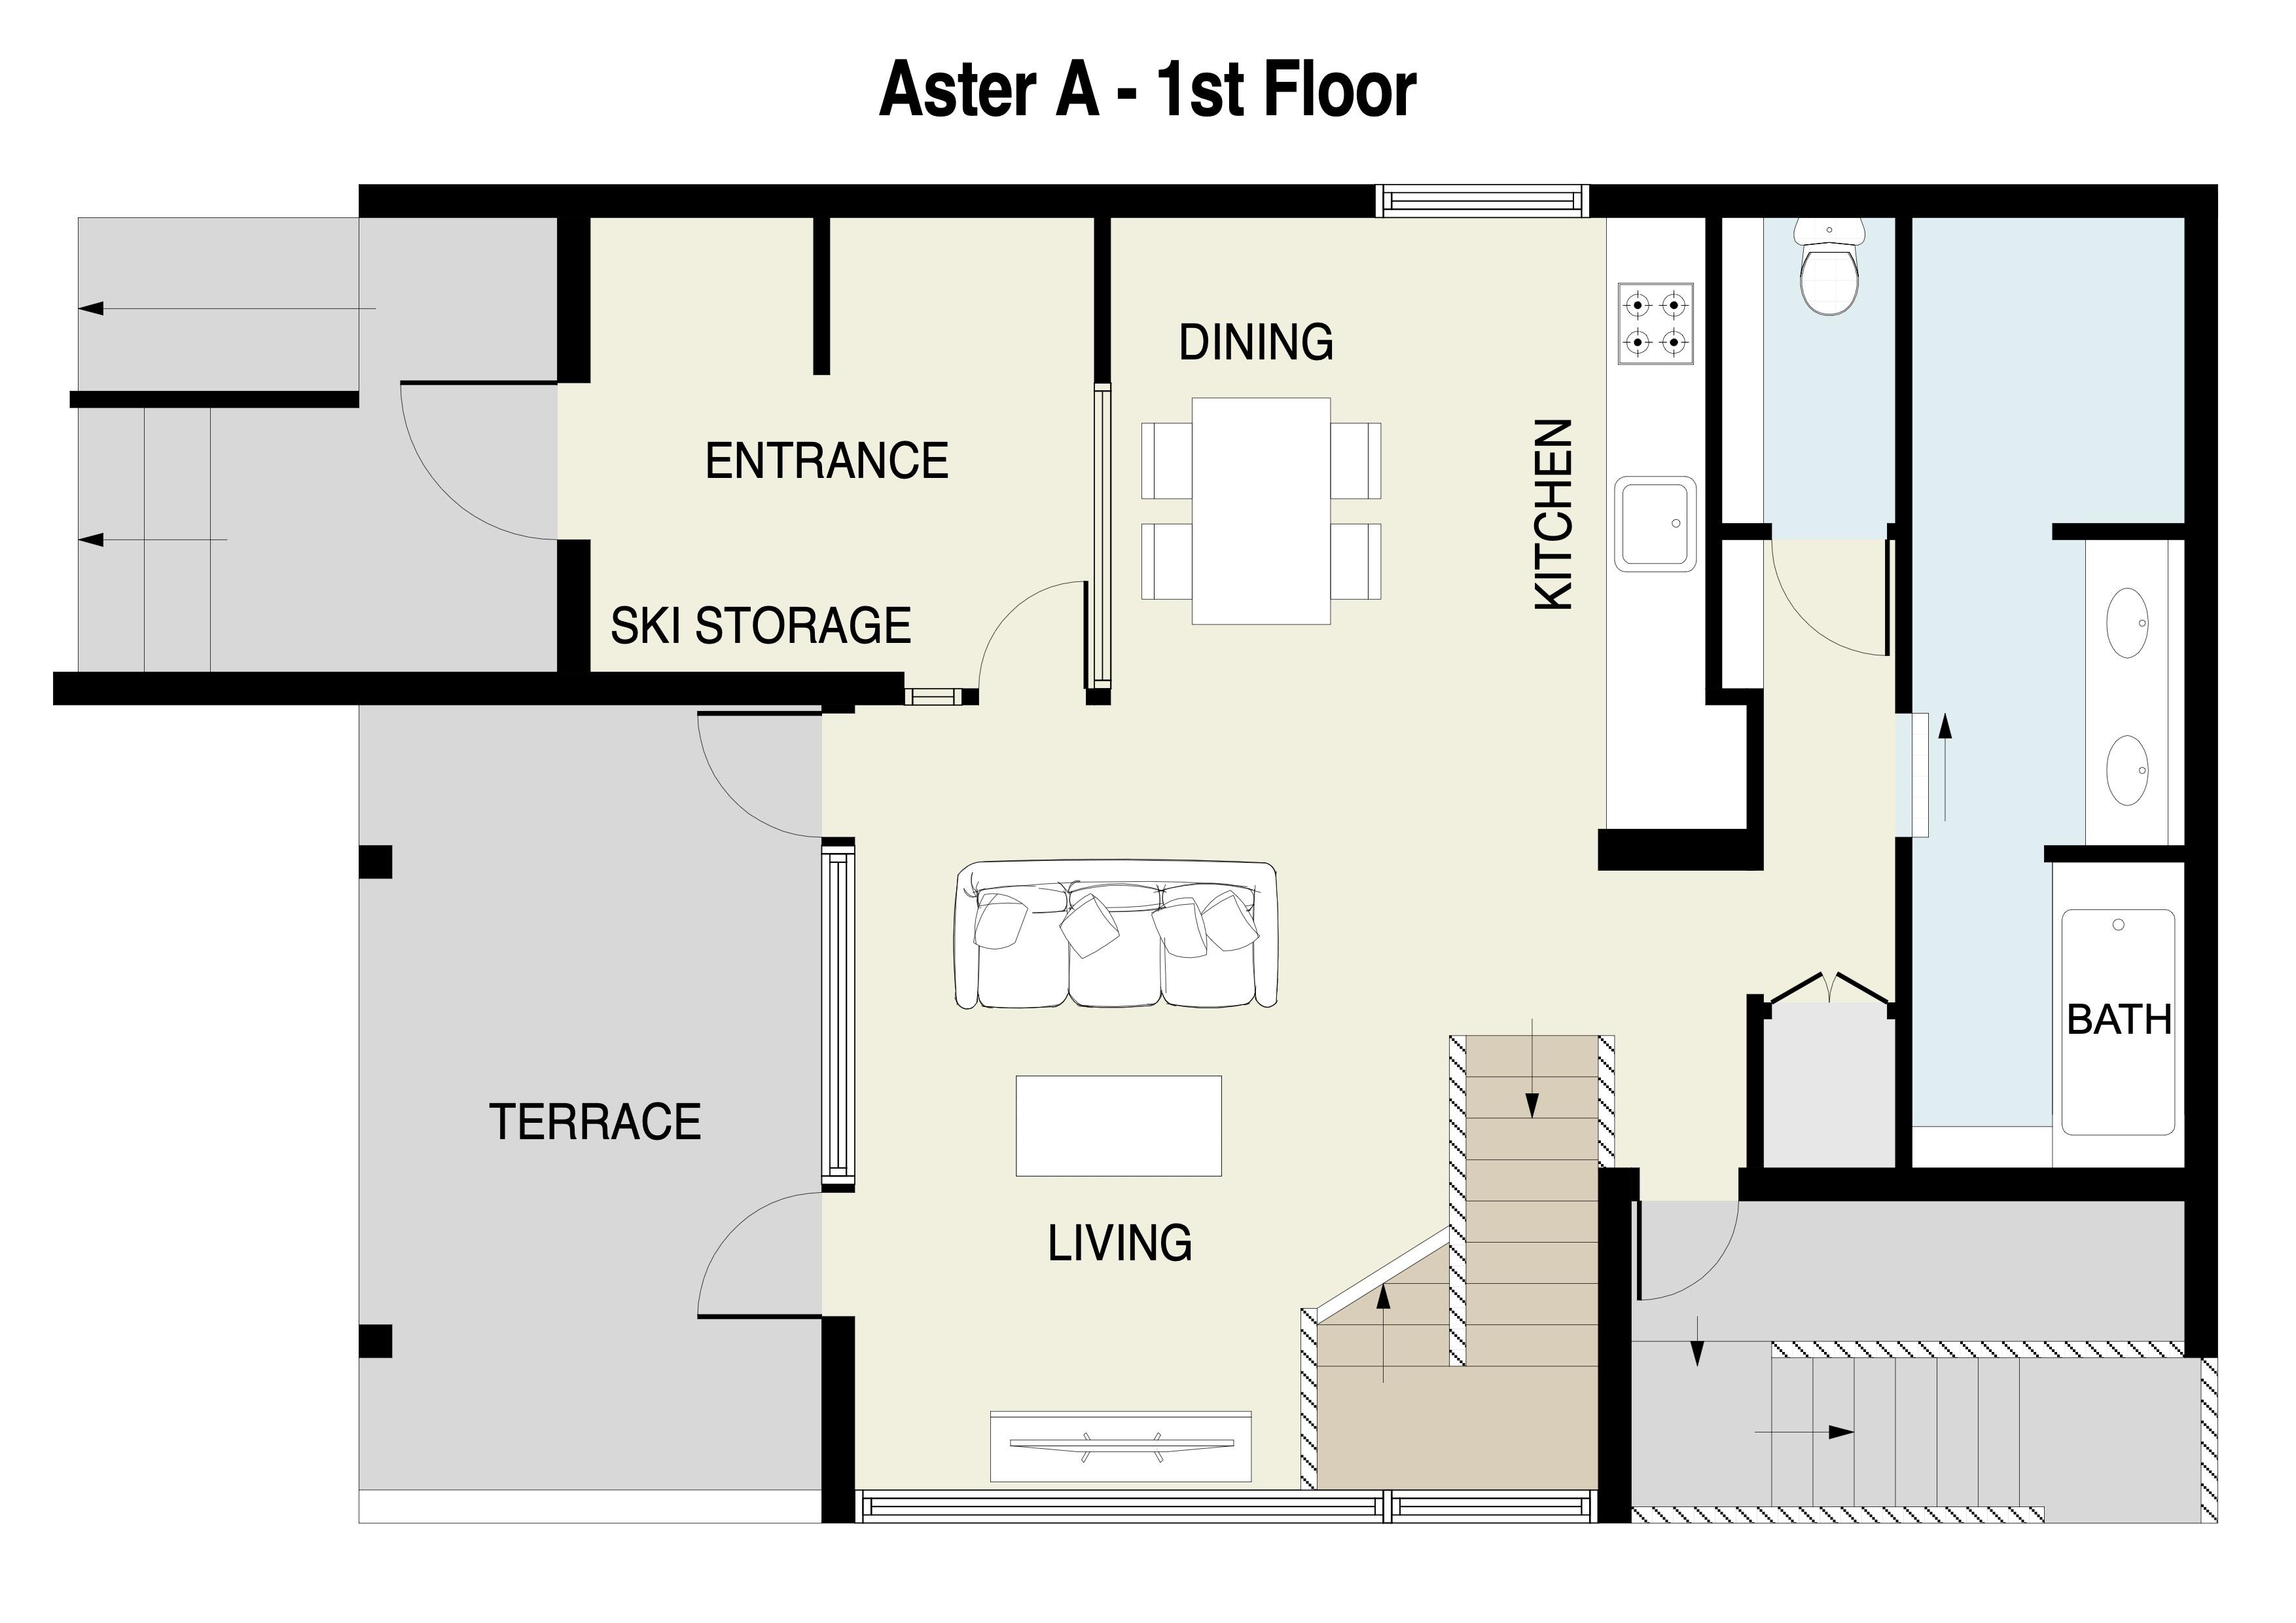 Aster A 1st Floor plan